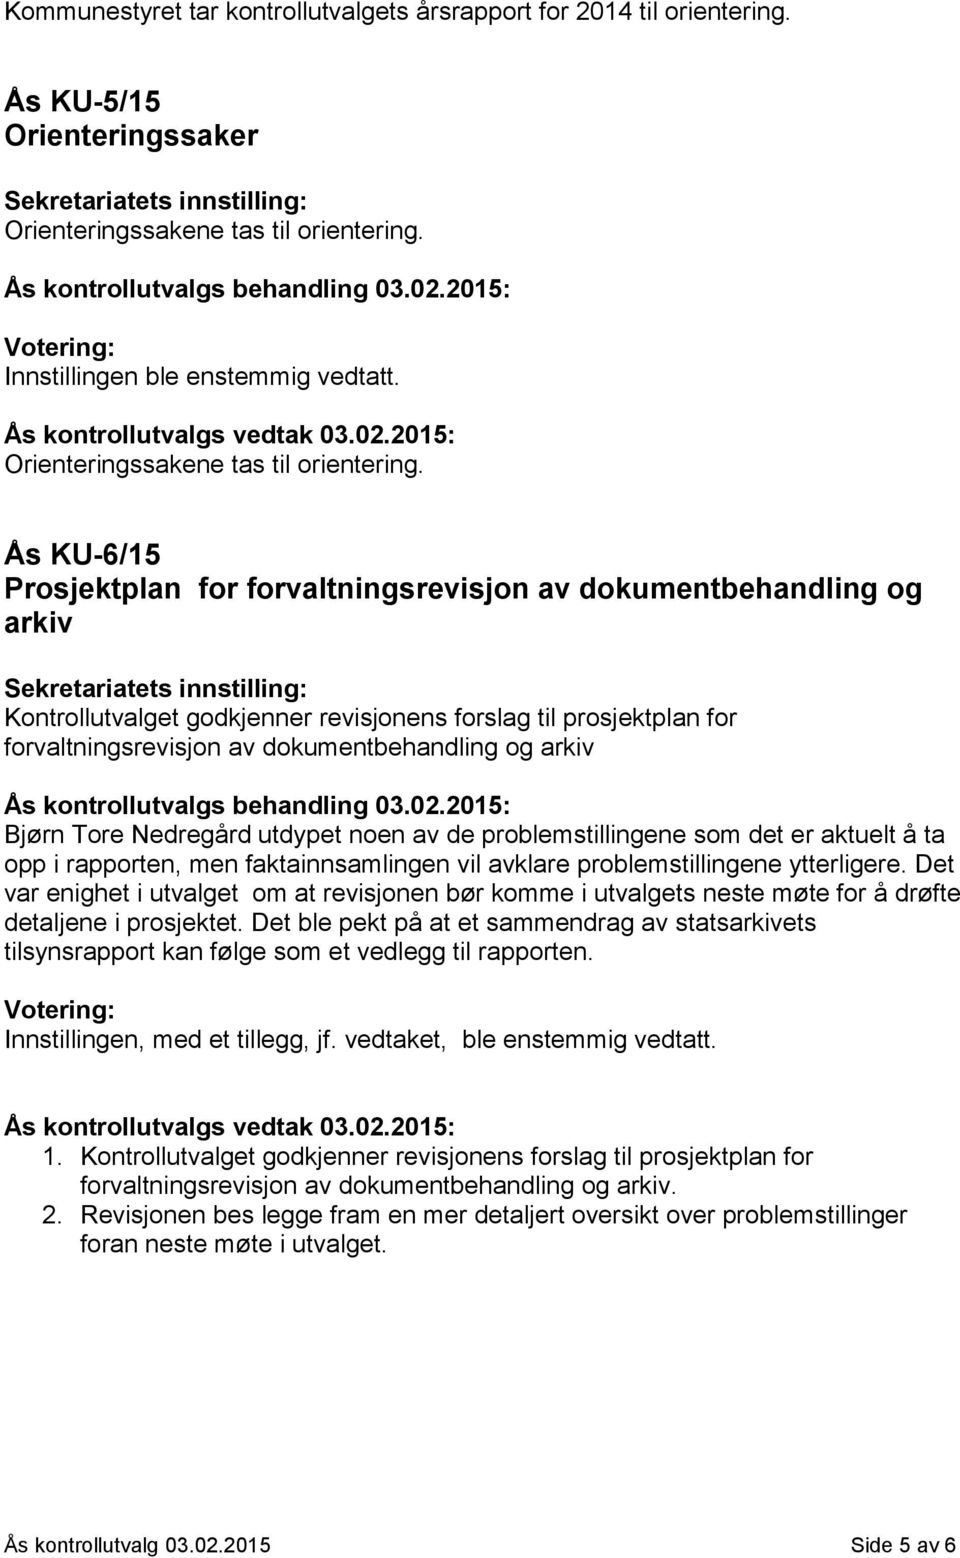 Ås KU-6/15 Prosjektplan for forvaltningsrevisjon av dokumentbehandling og arkiv Kontrollutvalget godkjenner revisjonens forslag til prosjektplan for forvaltningsrevisjon av dokumentbehandling og